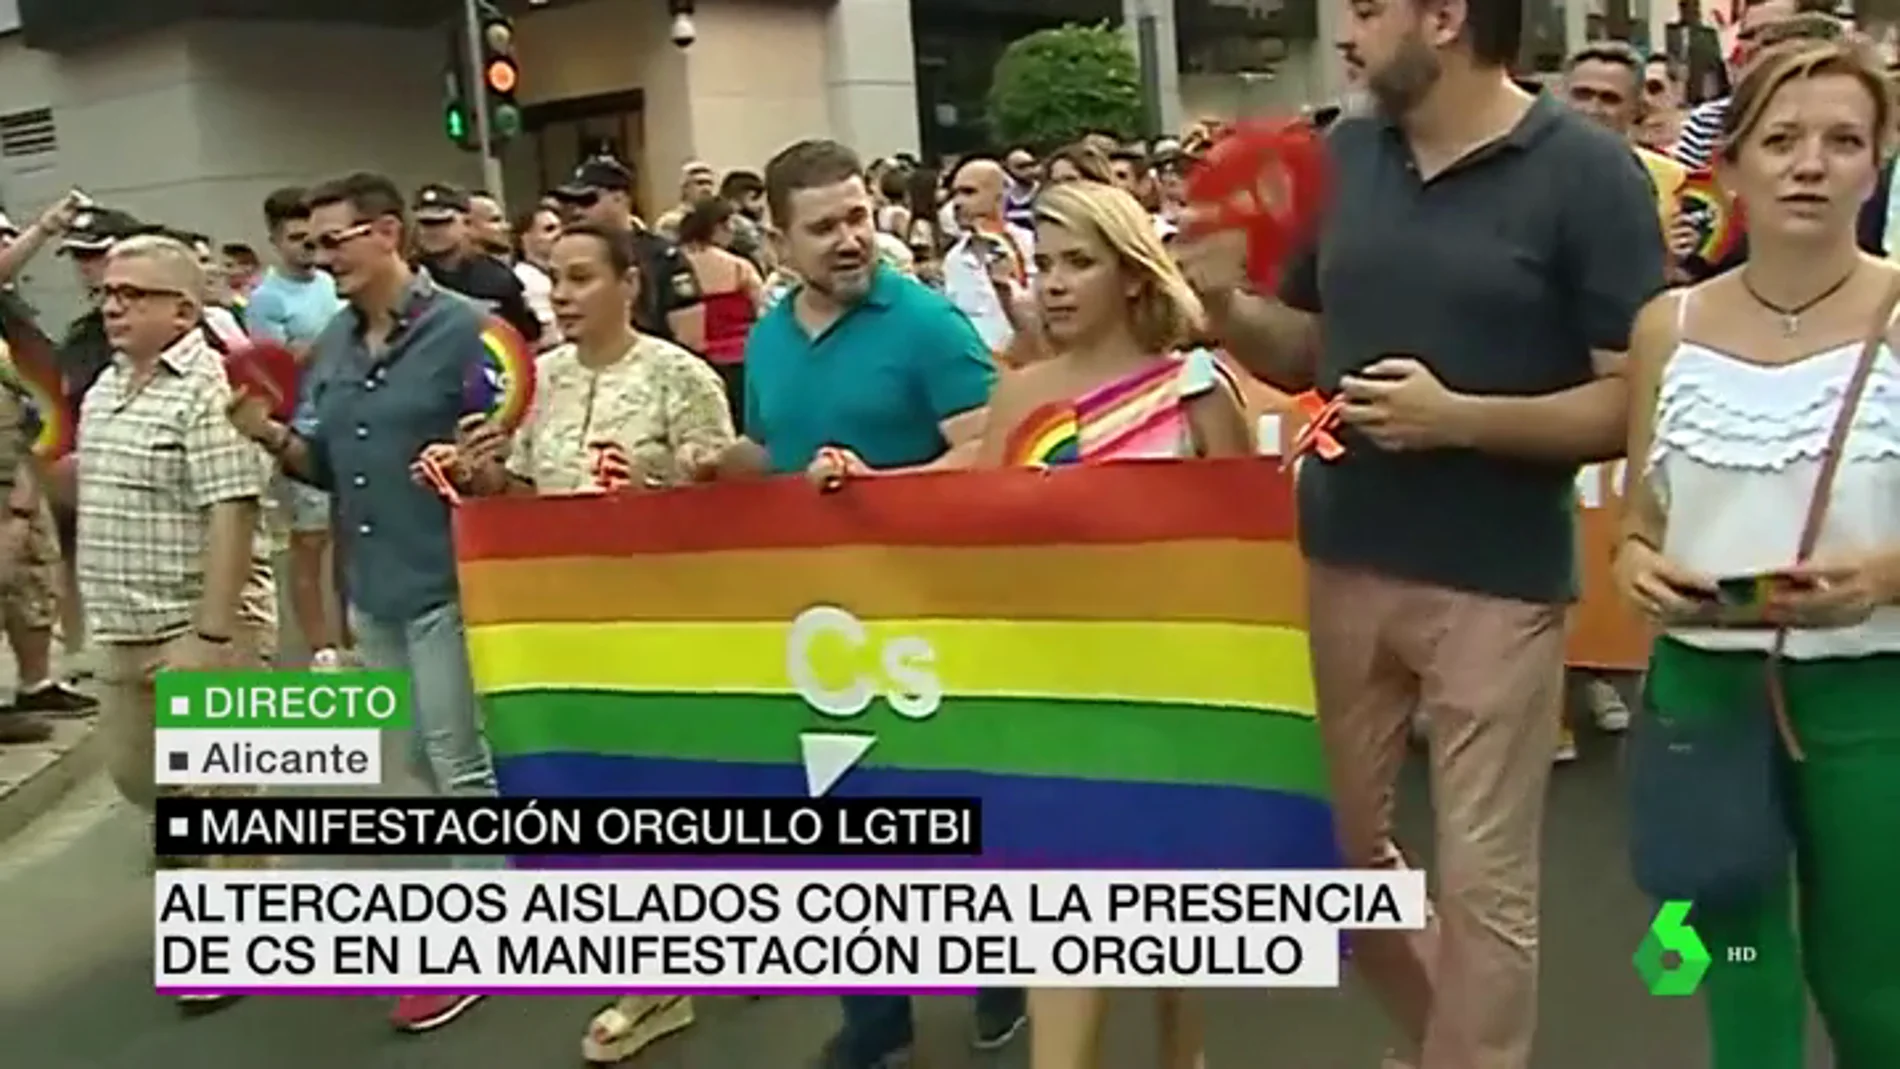 Ciudadanos participa en la manifestación del Orgullo en Alicante pese a no estar invitado